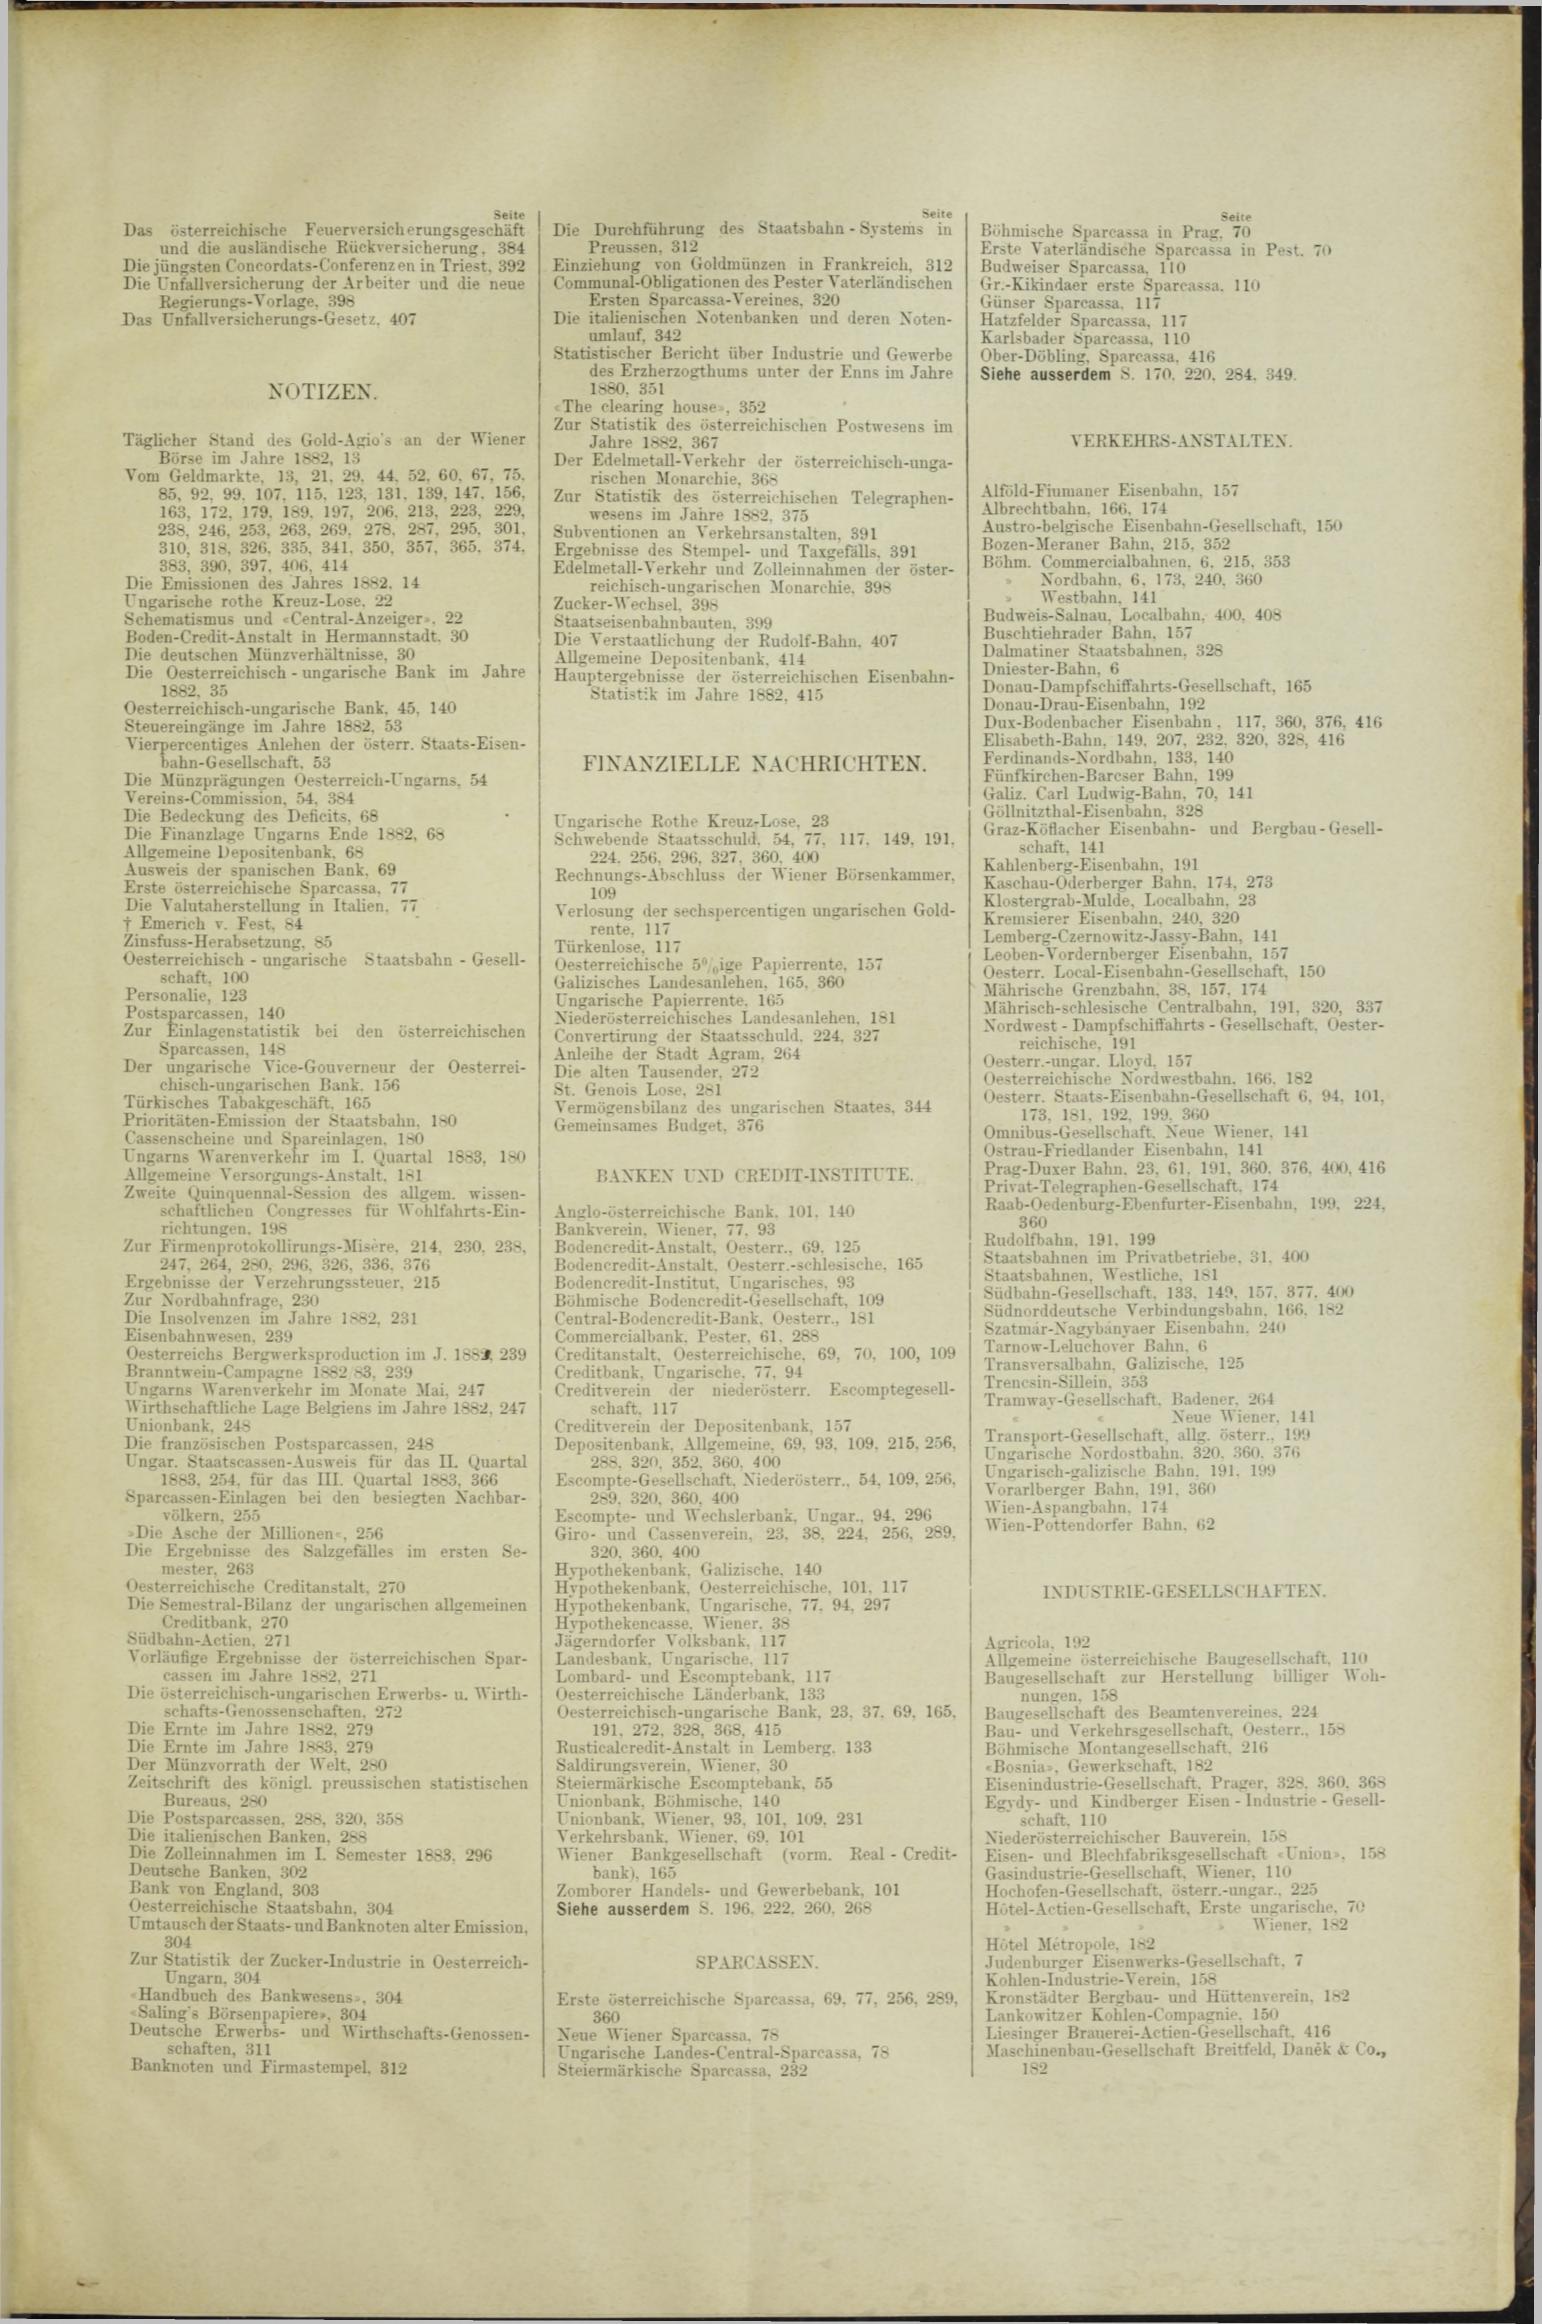 Der Tresor 01.03.1883 - Seite 11